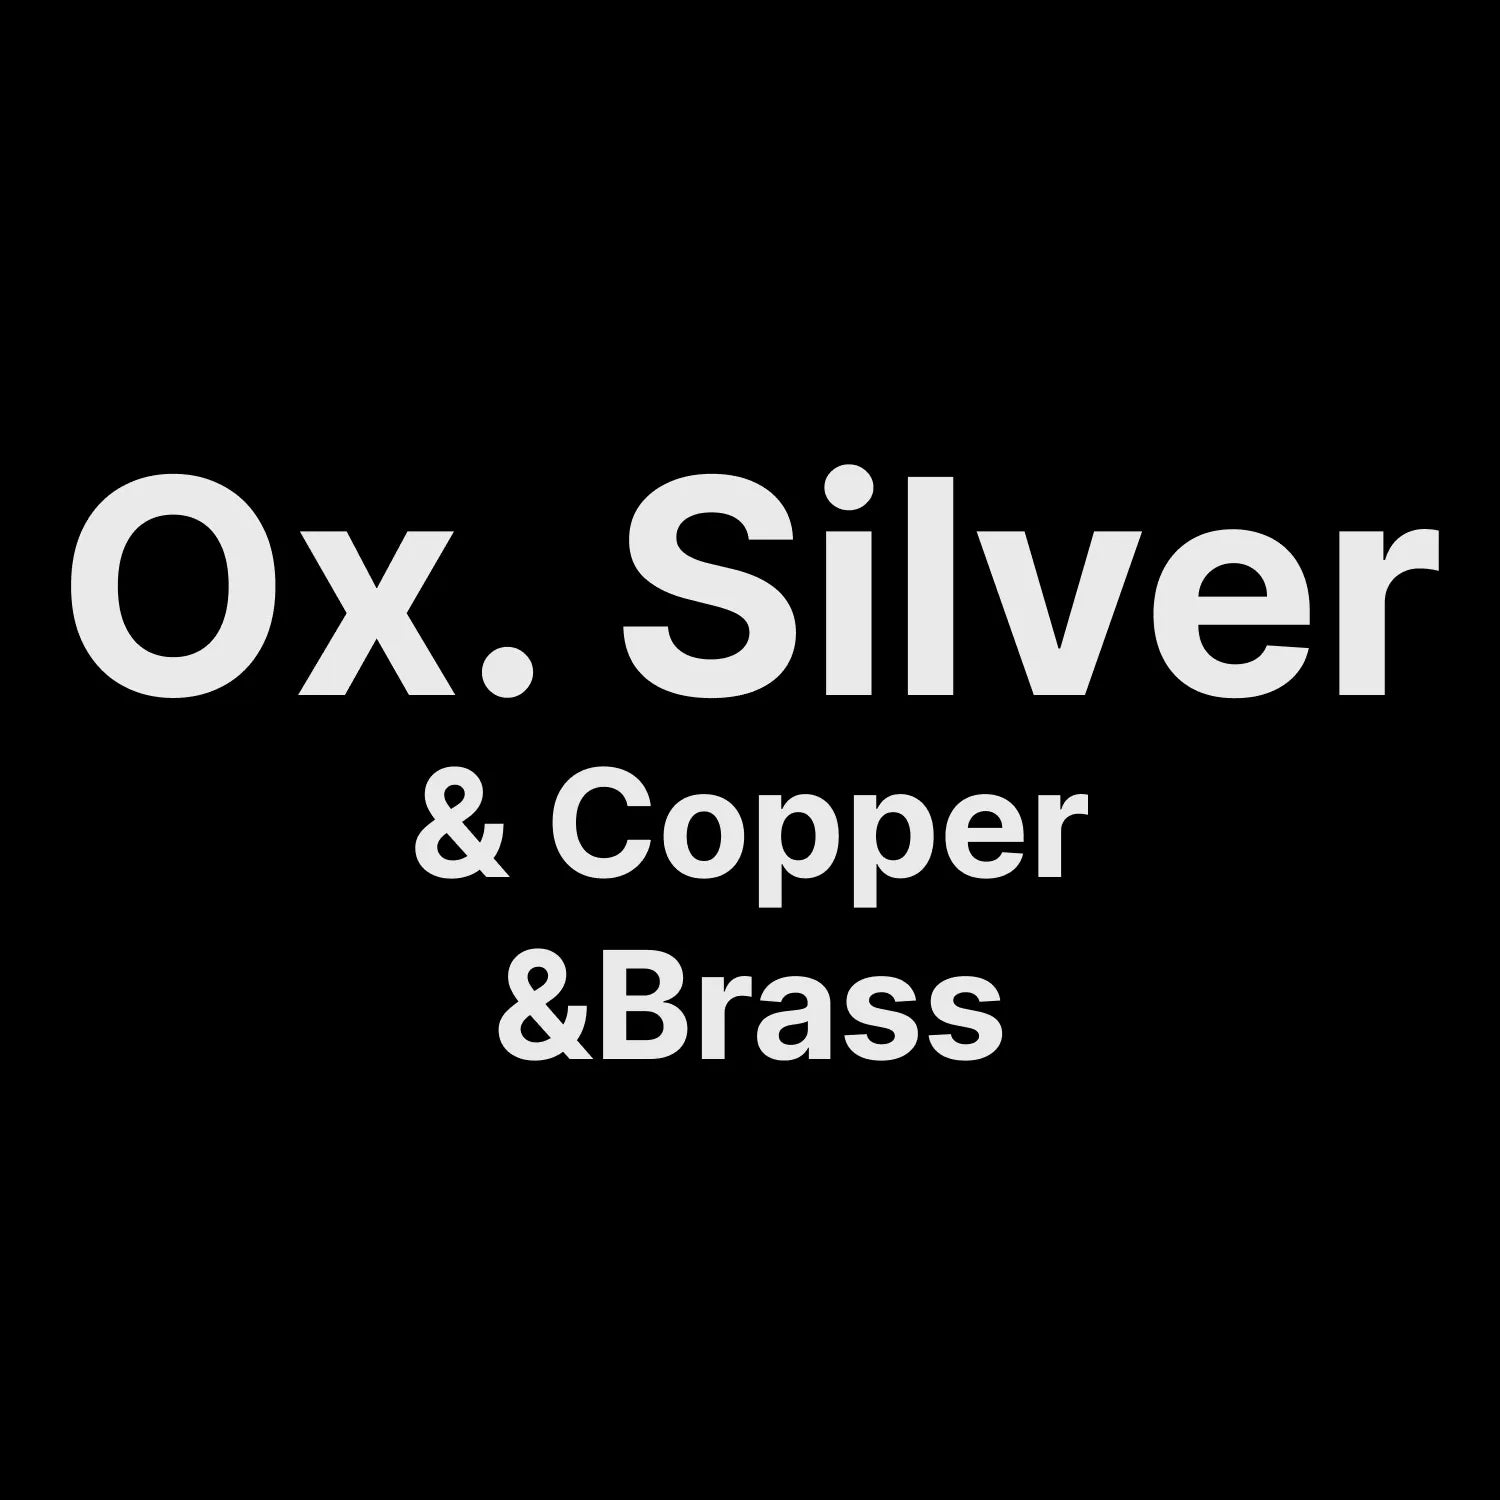 Tiger Pendant Oxidized Silver & Copper & Brass